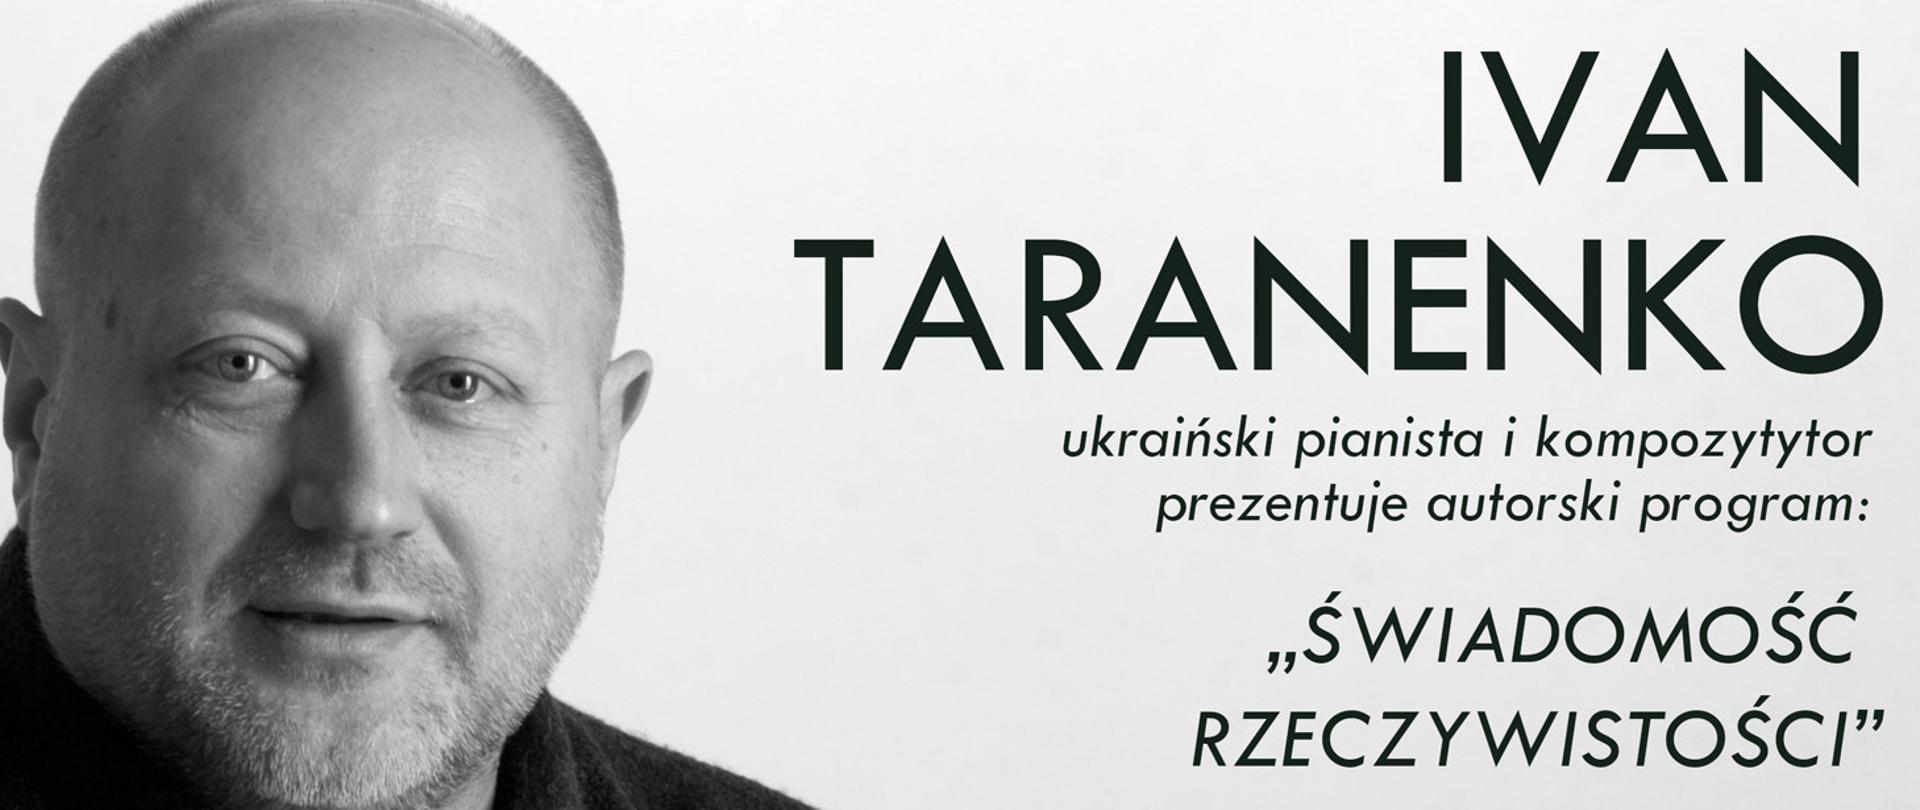 białe tło, z lewej strony zdjęcie twarzy Ivan taranenko z prawej napis Ivan Taranenko Ukraiński pianista i kompozytor, tytuł koncertu :Świadomość i Rzeczywistość